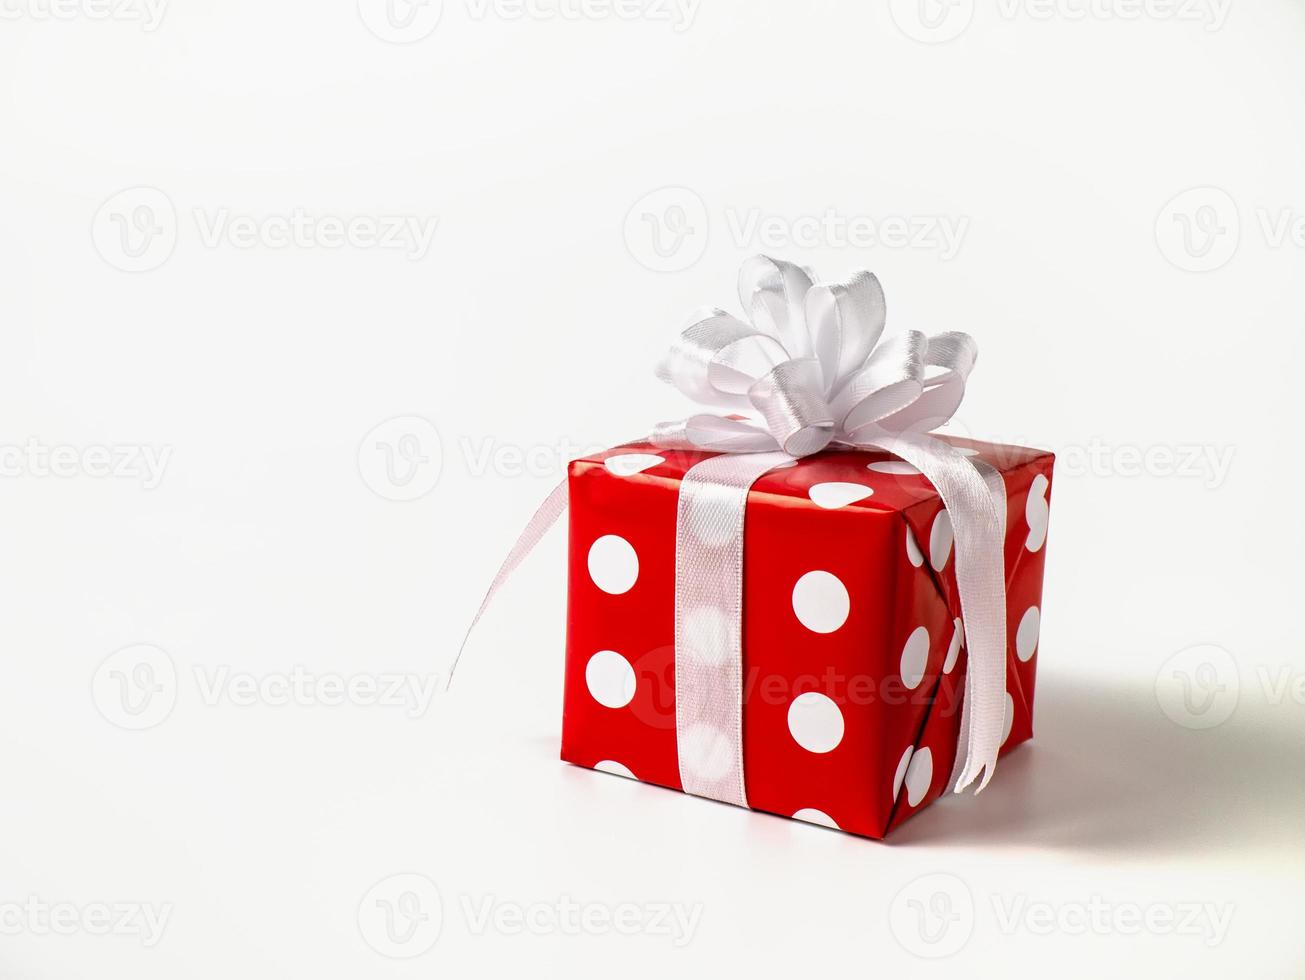 överraskning gåva för ny år, jul, födelsedag, älskad. röd polka punkt låda med stor rosett på vit bakgrund. foto